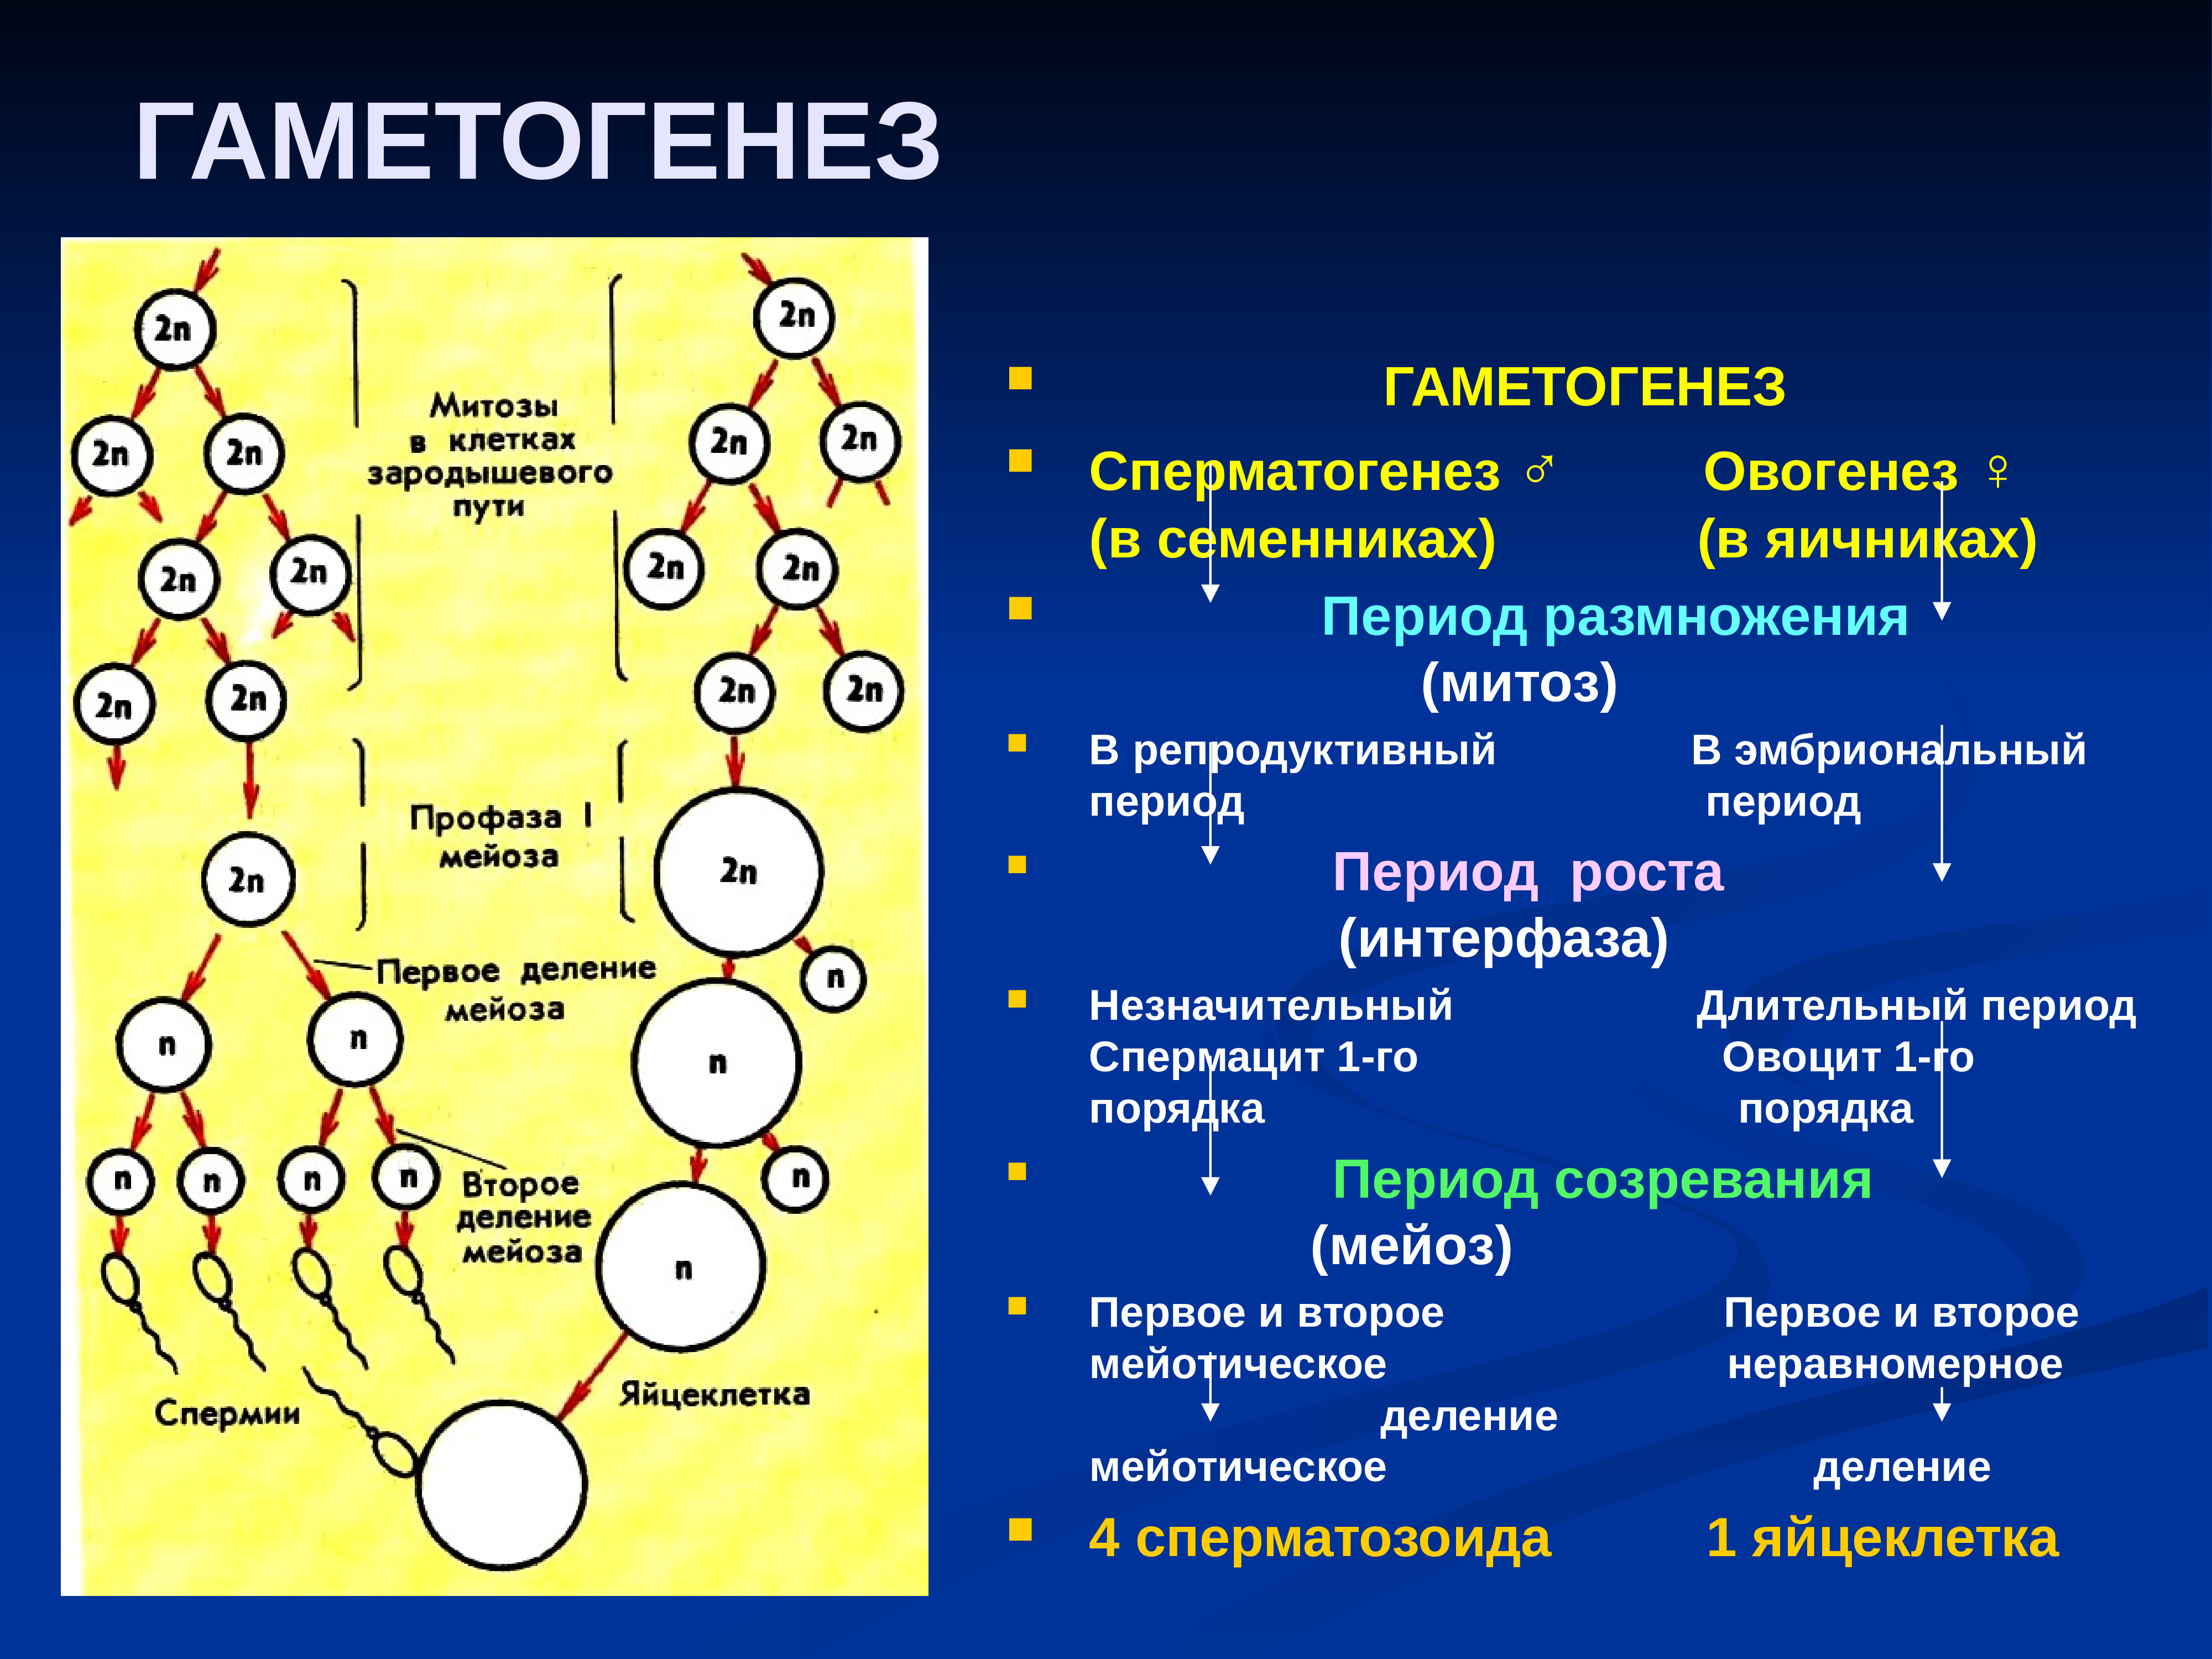 Женские половые клетки образуются в процессе. Сперматогенез и овогенез. Гаметогенез сперматогенез периоды. Сперматогенез 2) оогенез. Яйцеклетка схема овогенеза.